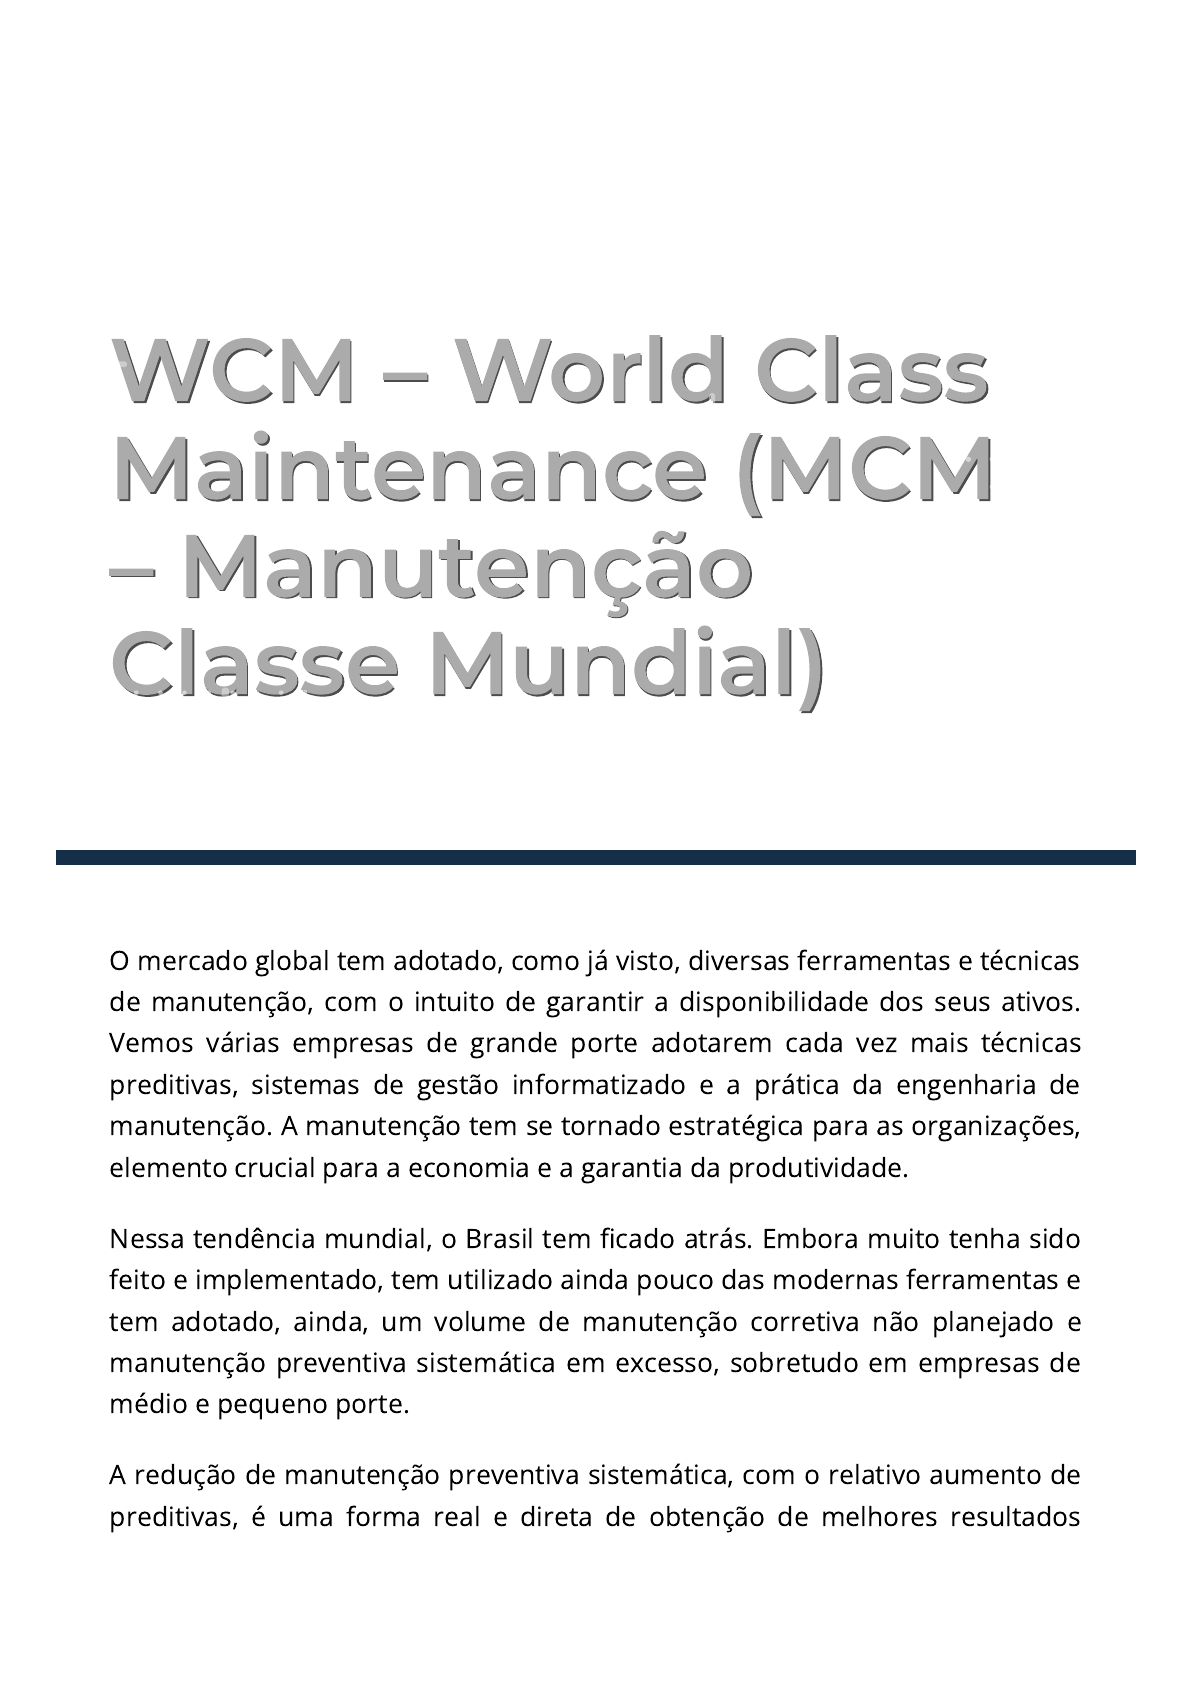 WCM 2009-TT09 Rhodia Gestao Estrategica da Manutencao Utilizando TPM e  Confiabilidade